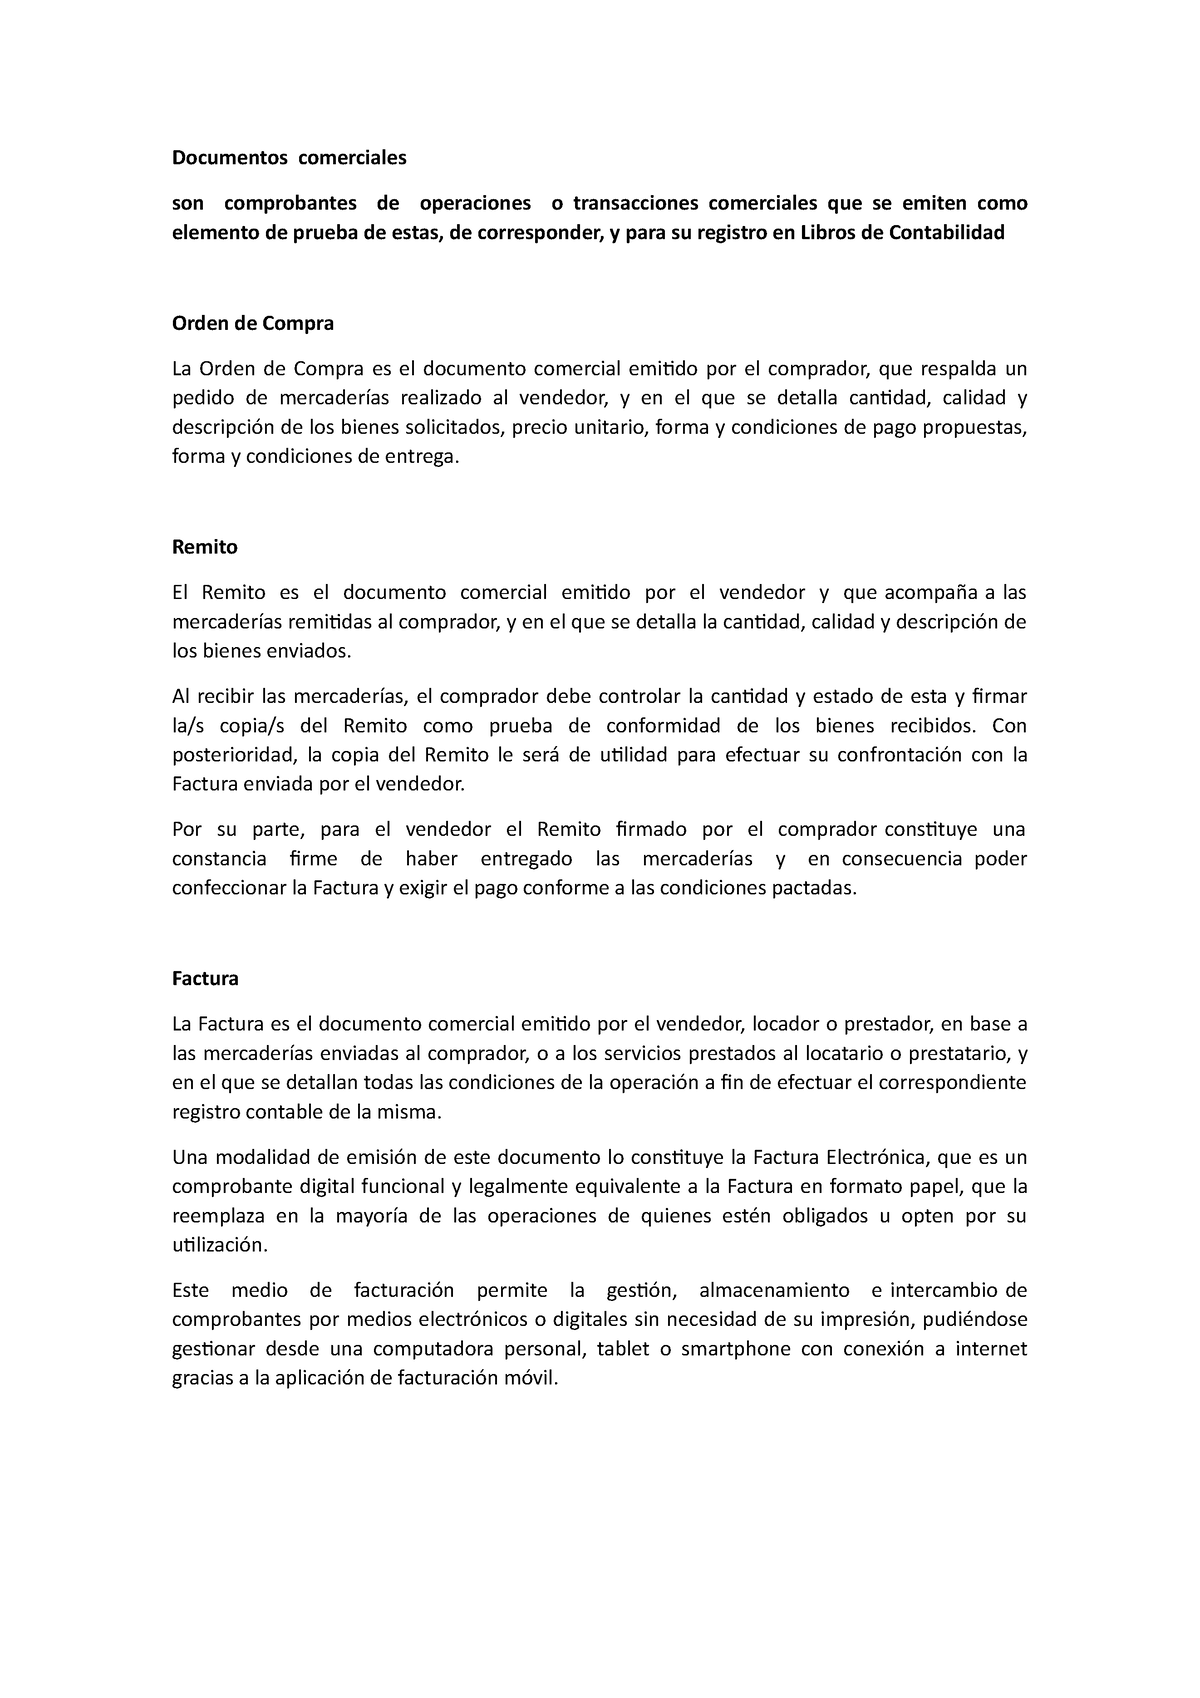 Documentos Comerciales Remito El Remito Es El Documento Comercial Emitido Por El Vendedor Y 5454